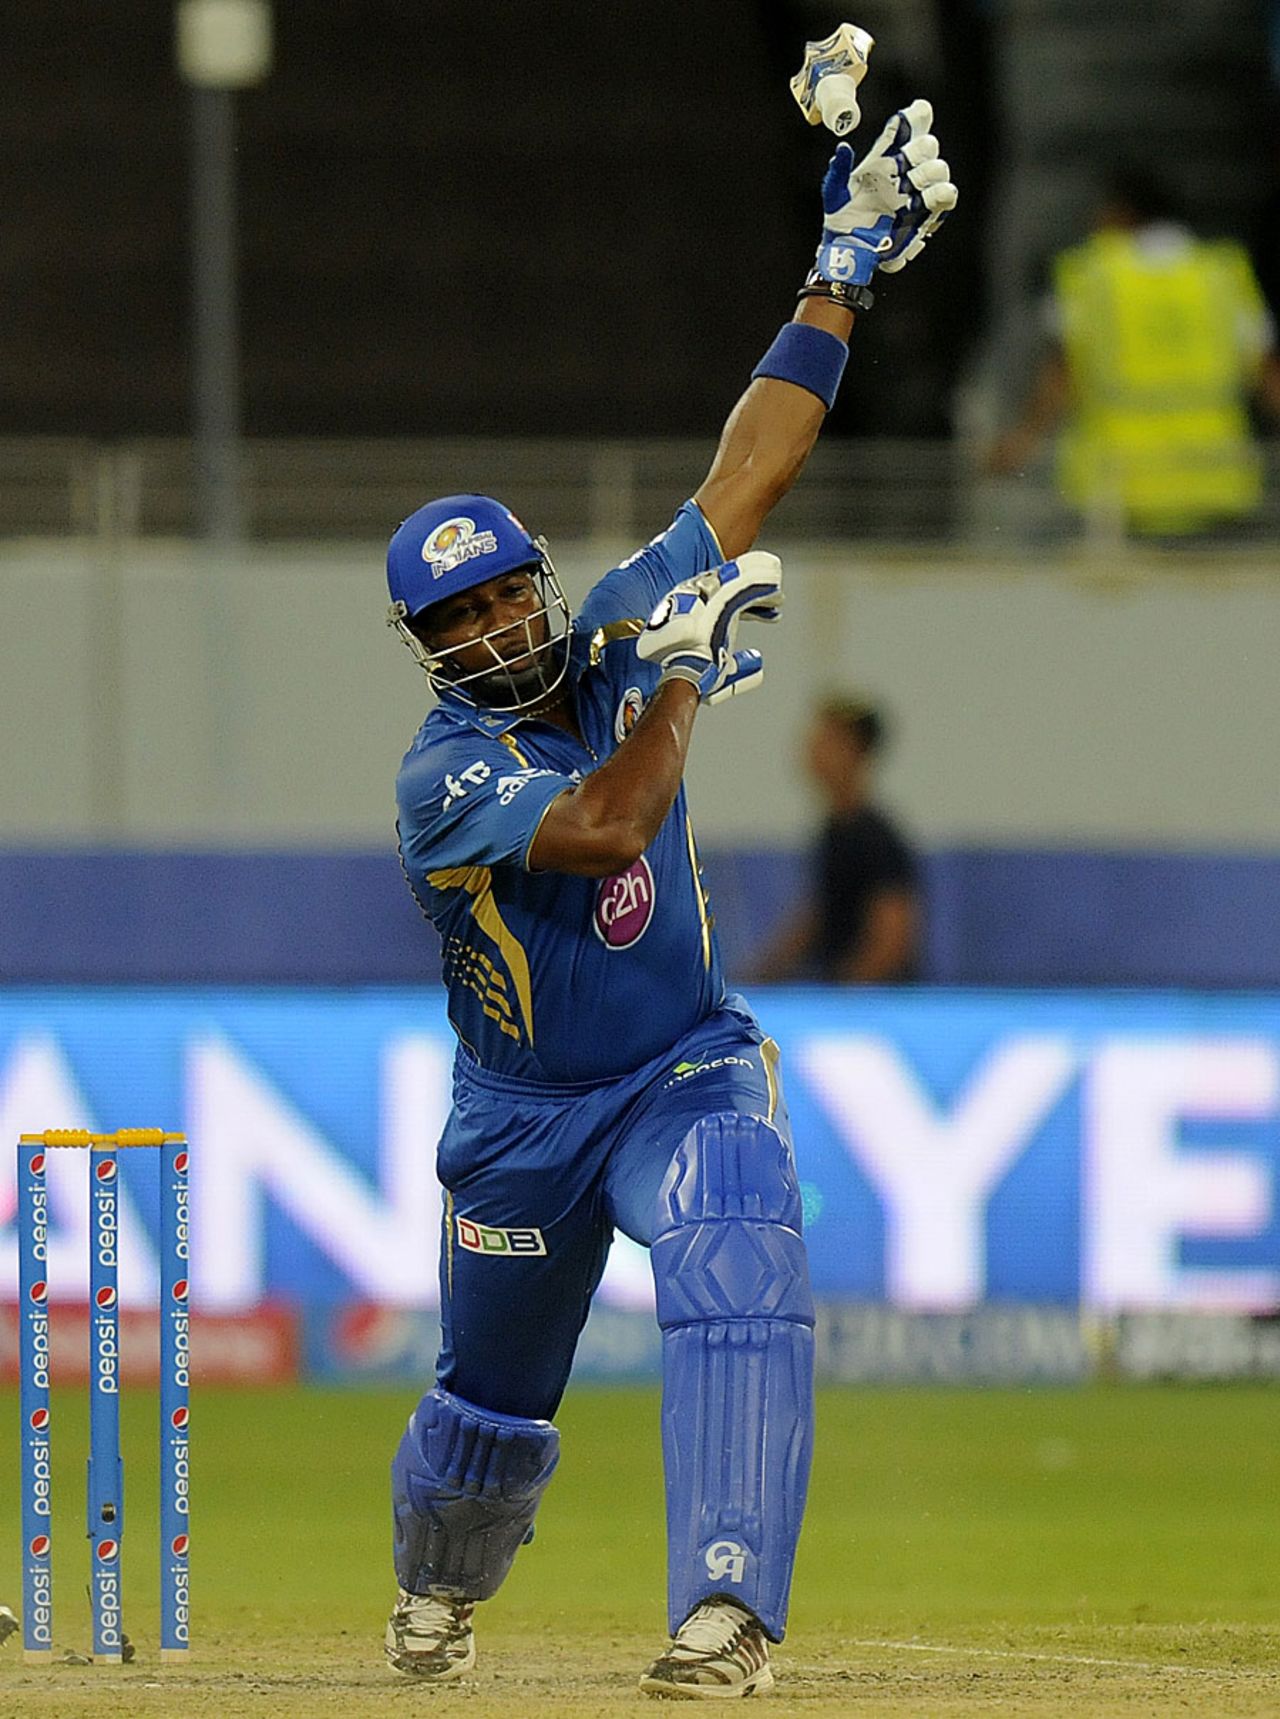 Kieron Pollard swings and loses his bat, Mumbai Indians v Sunrisers Hyderabad, IPL 2014, Dubai, April 30, 2014